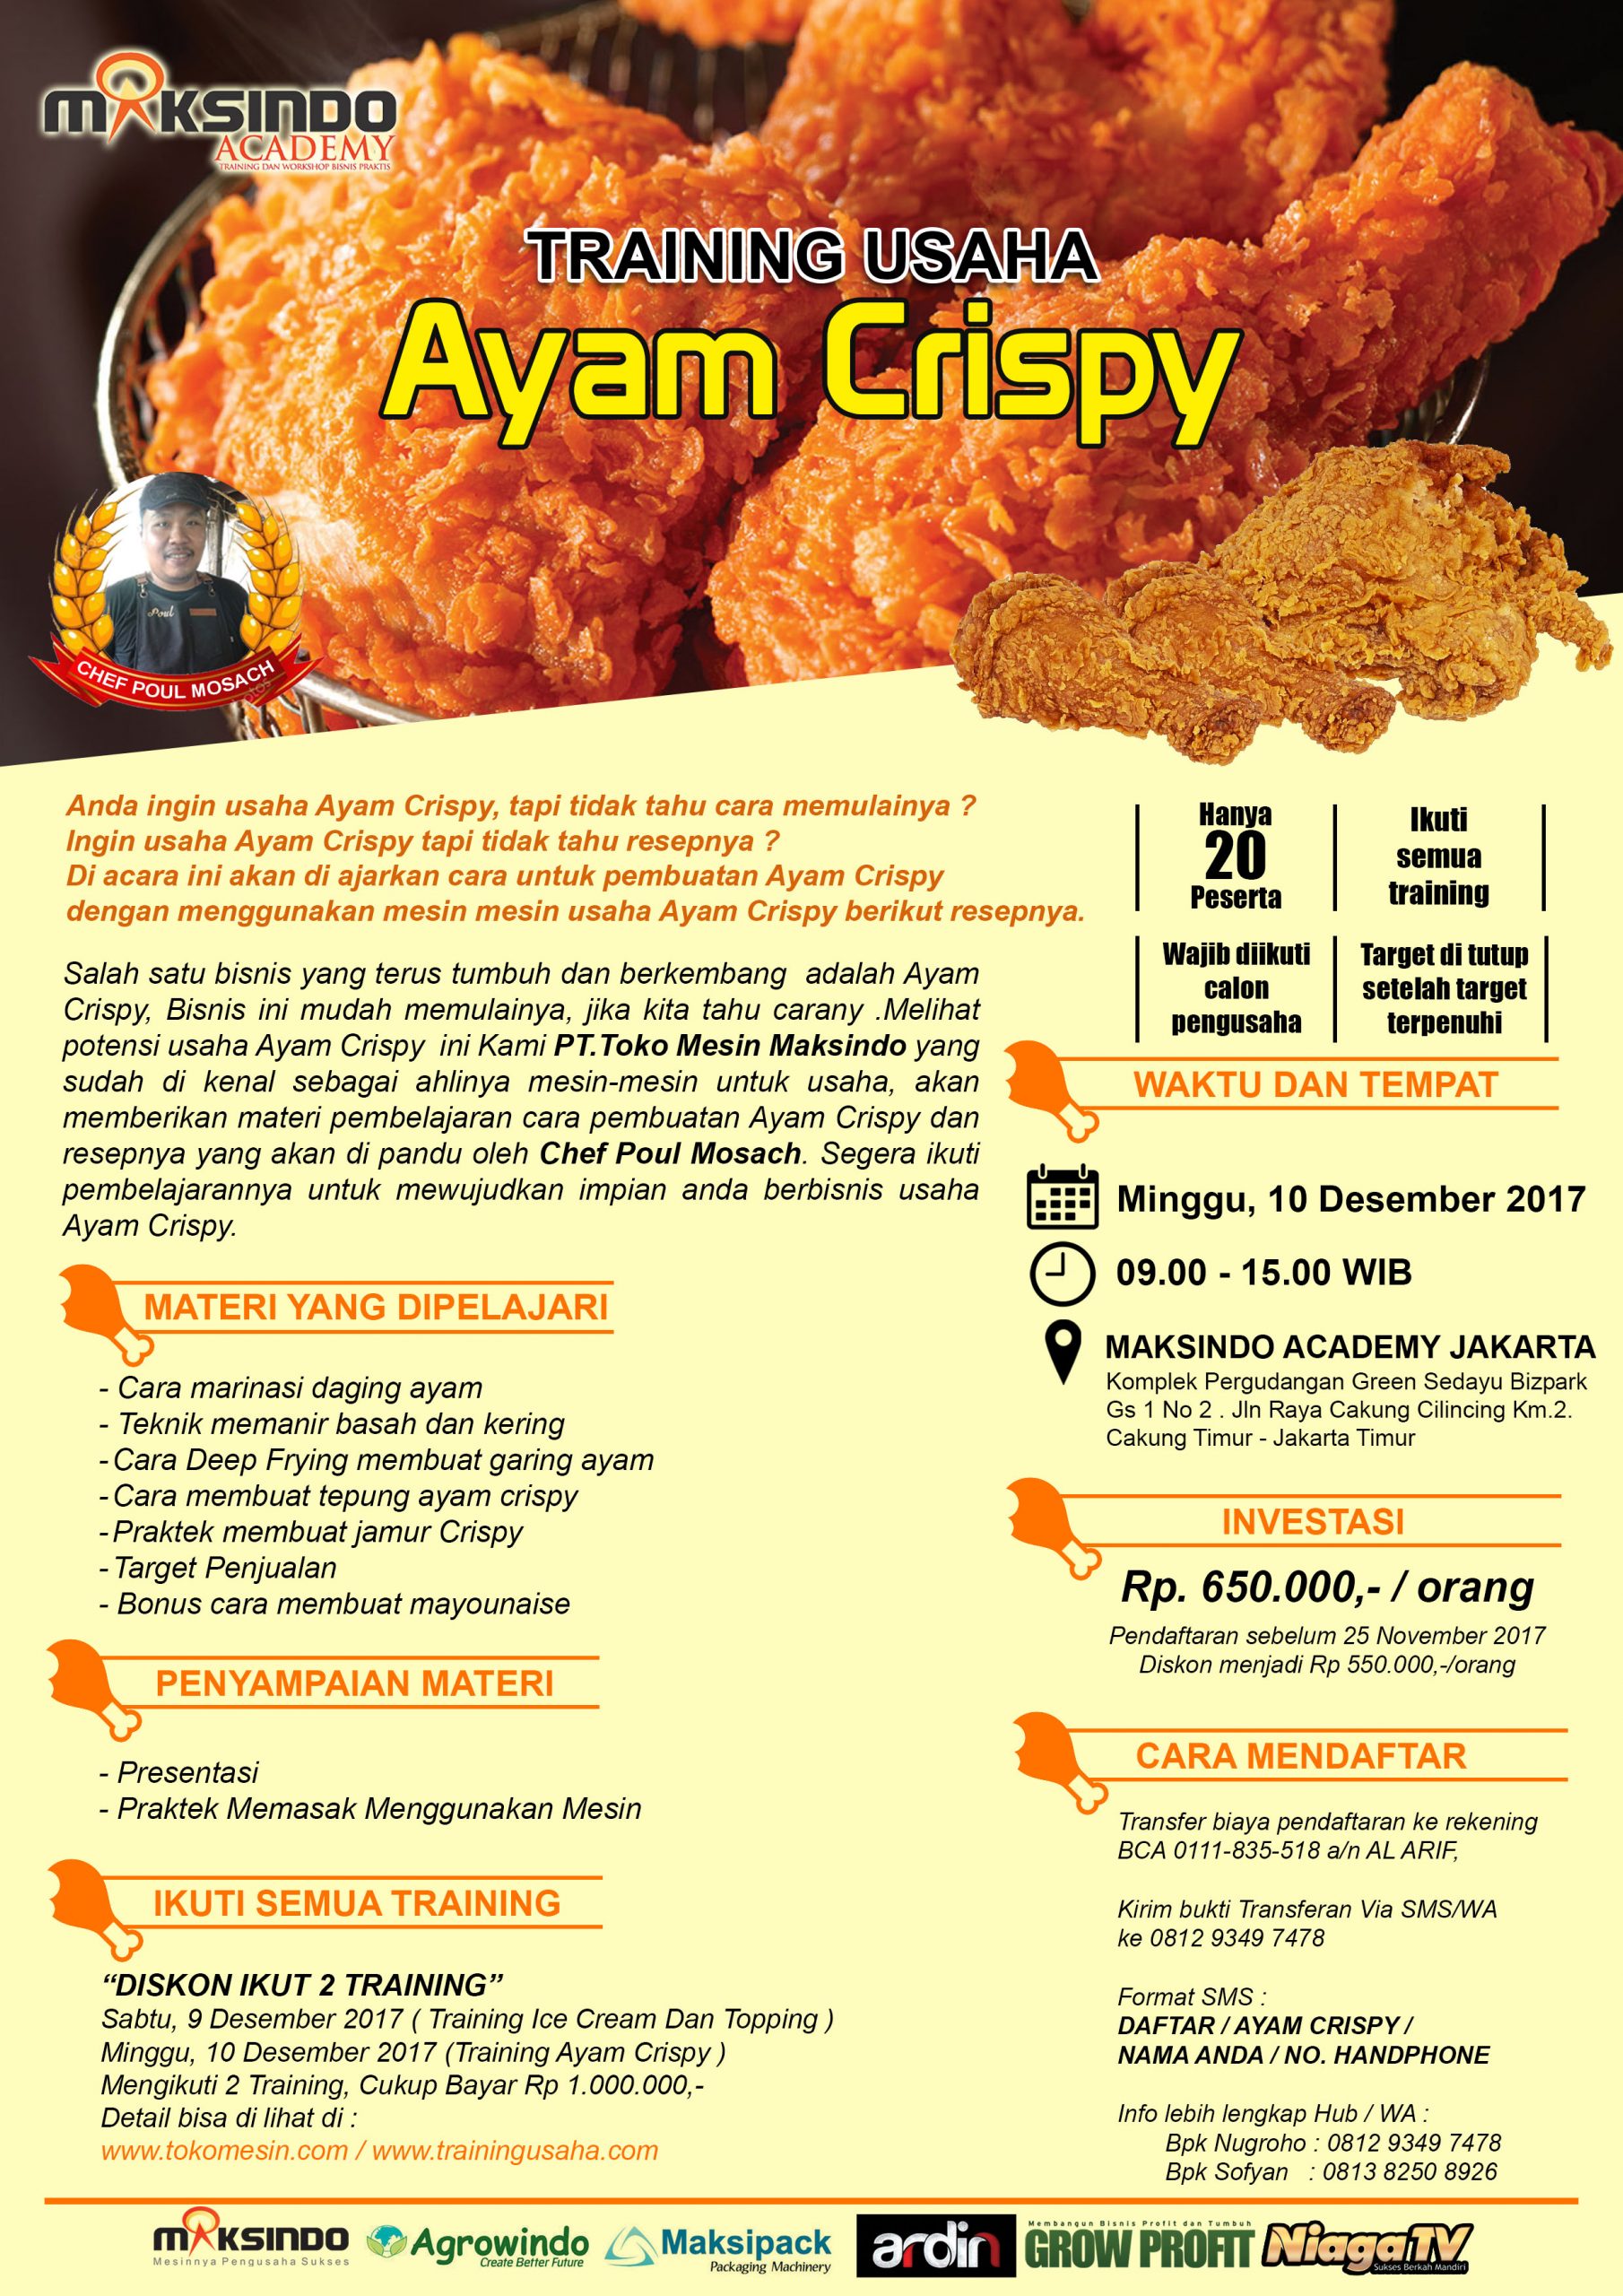 Training Usaha Ayam Crispy, 10 Desember 2017